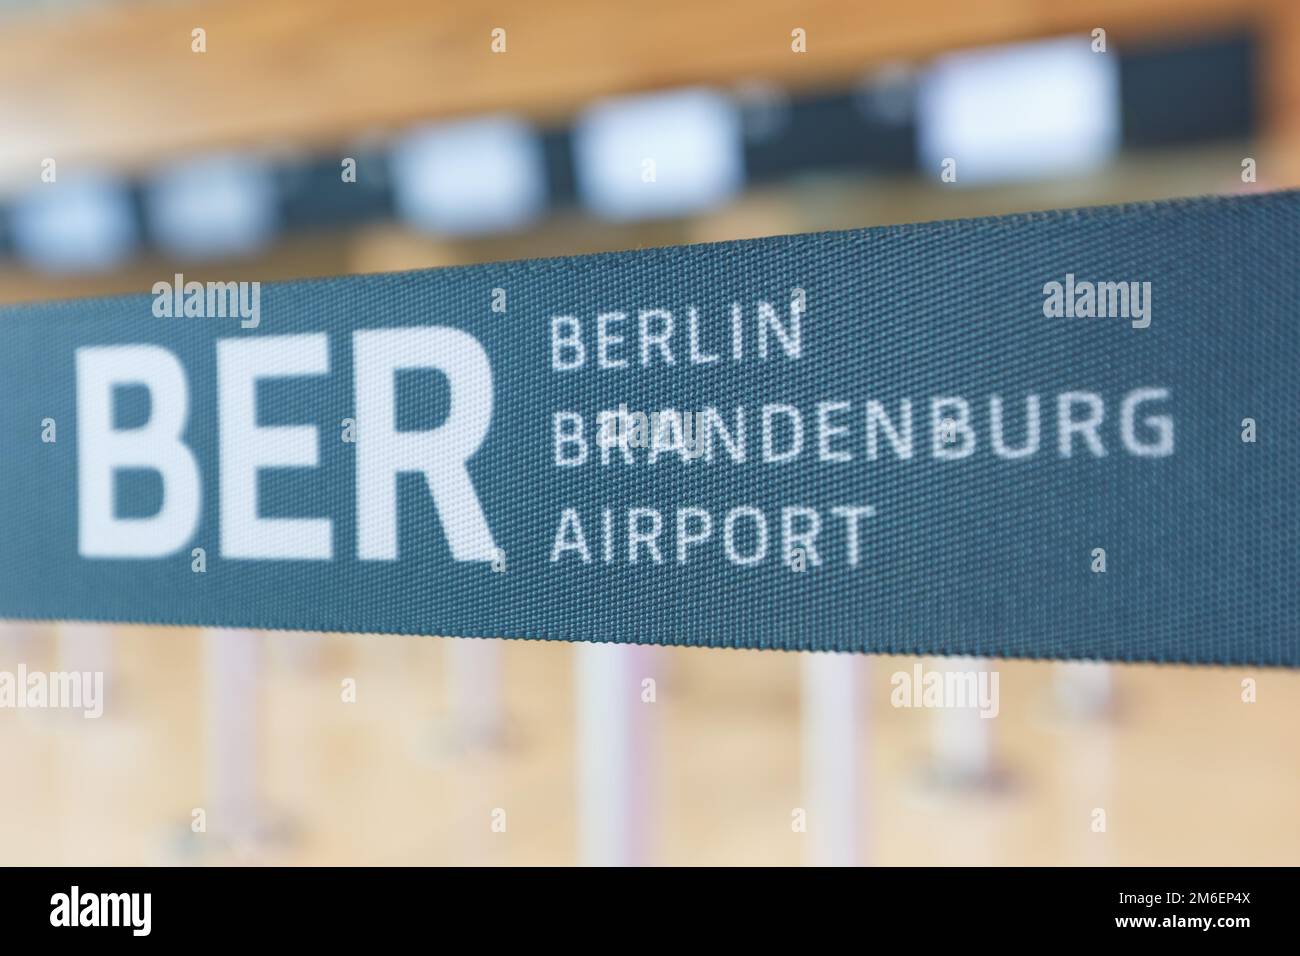 Flughafen Berlin Brandenburg BER Willy Brandt Airport Stock Photo